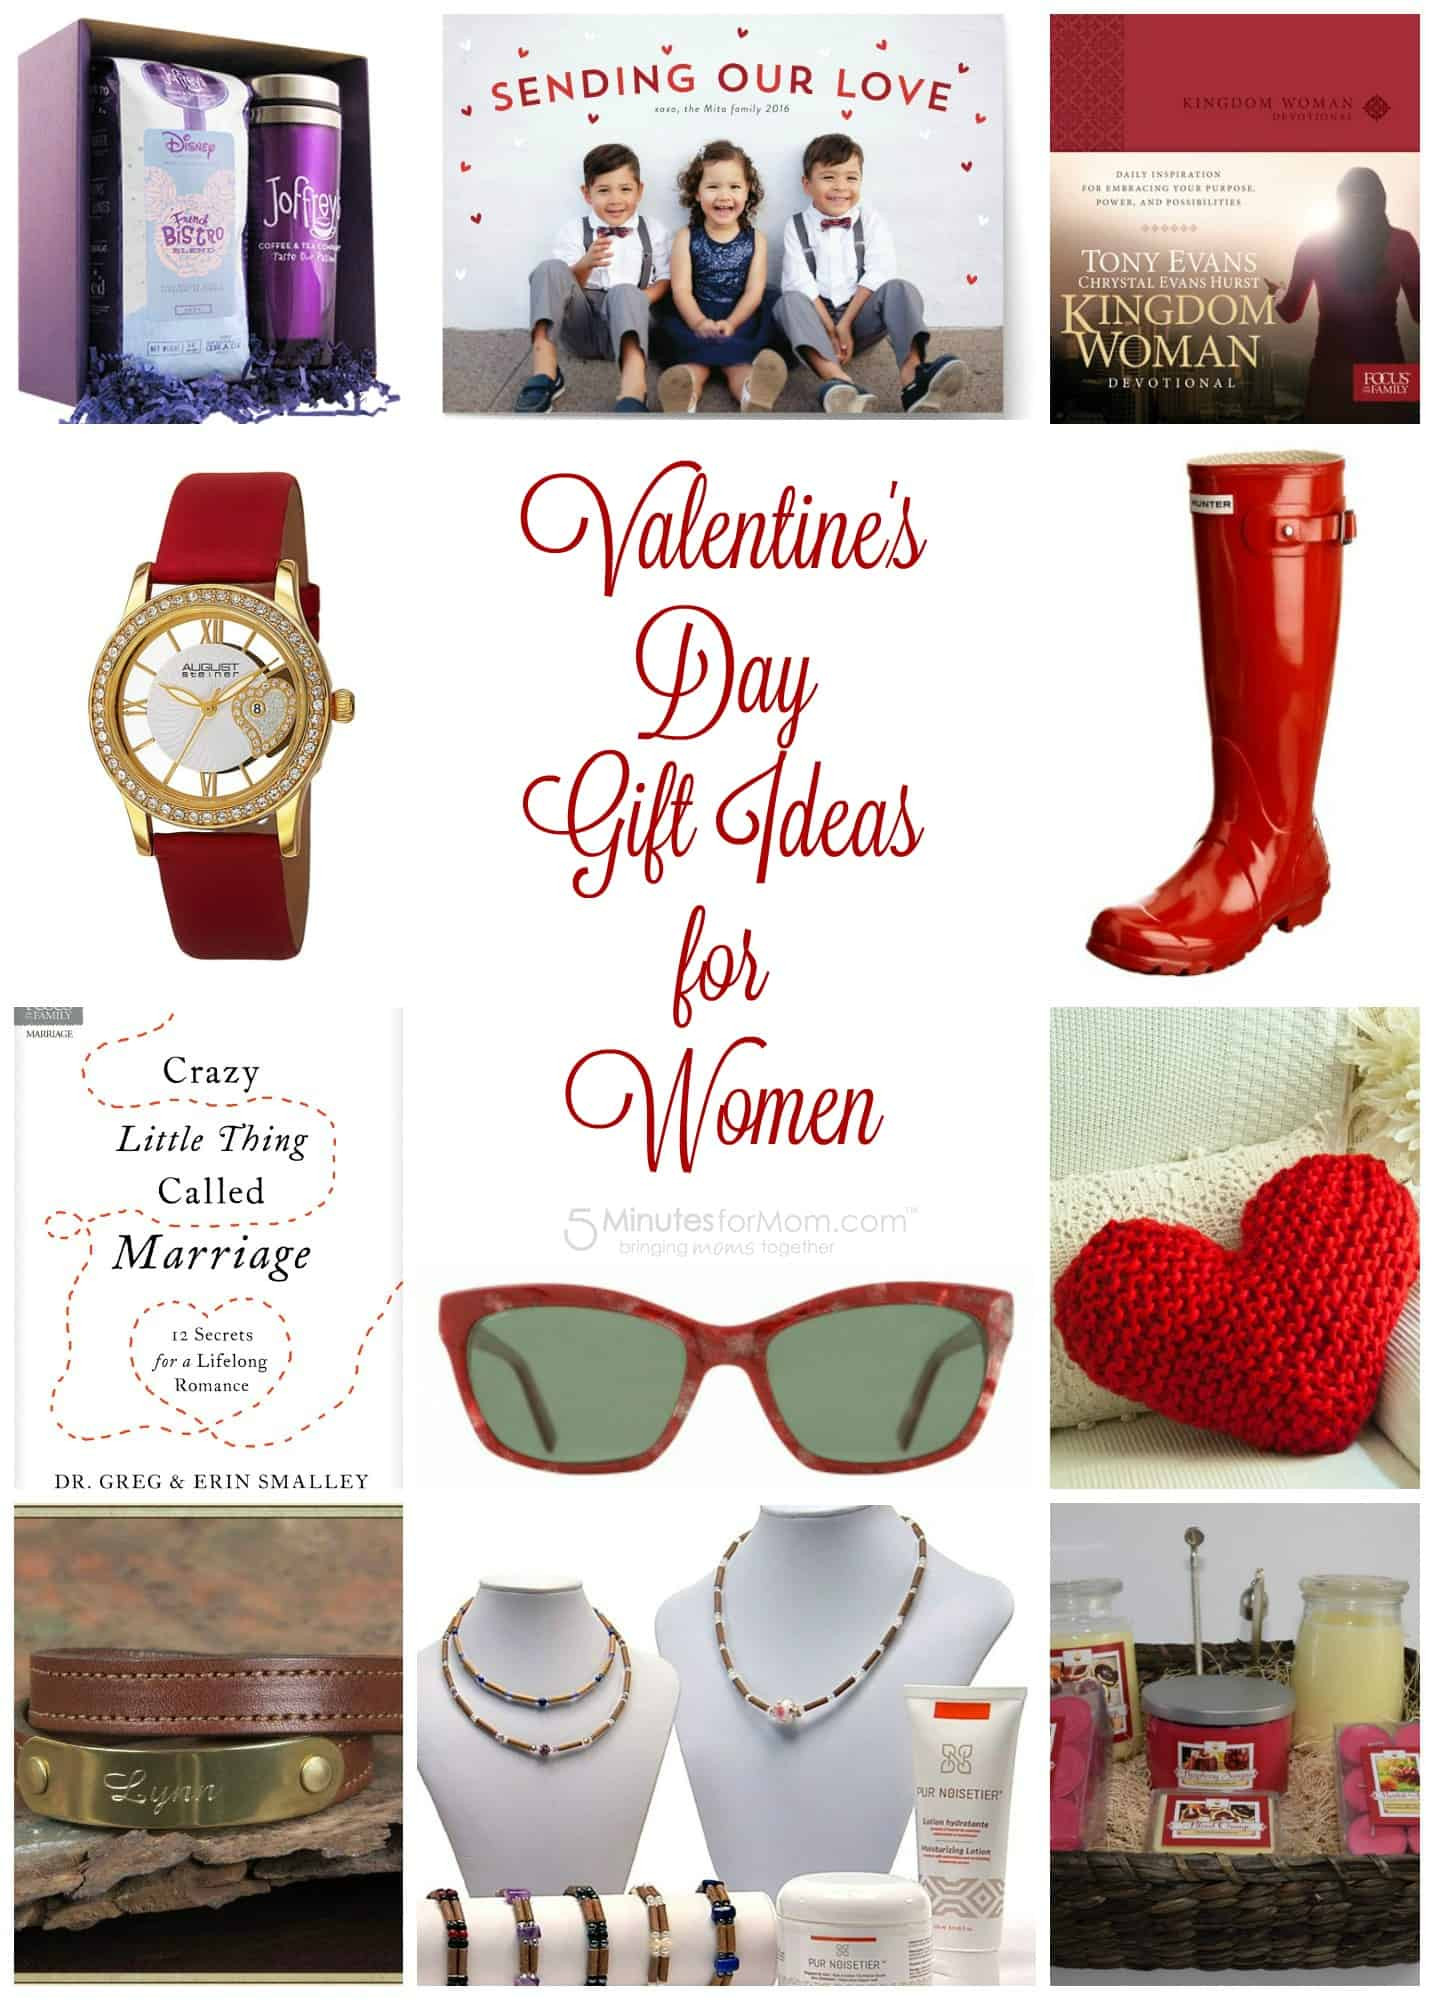 Valentine'S Day Gift Ideas For Women
 Valentine s Day Gift Guide for Women Plus $100 Amazon